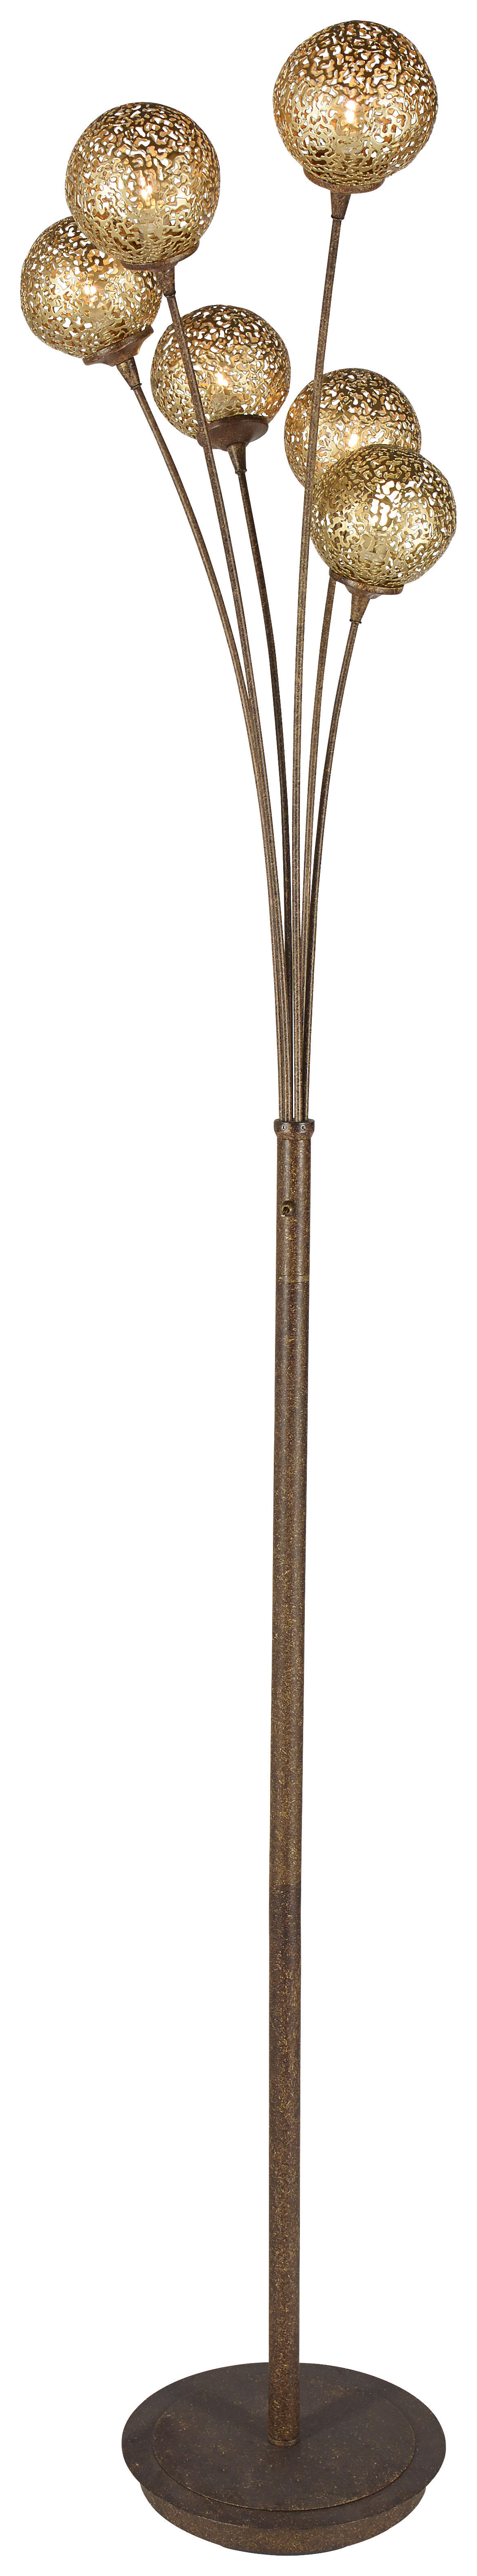 STEHLEUCHTE 34/34/184 cm    - Rostfarben, LIFESTYLE, Metall (34/34/184cm) - Paul Neuhaus